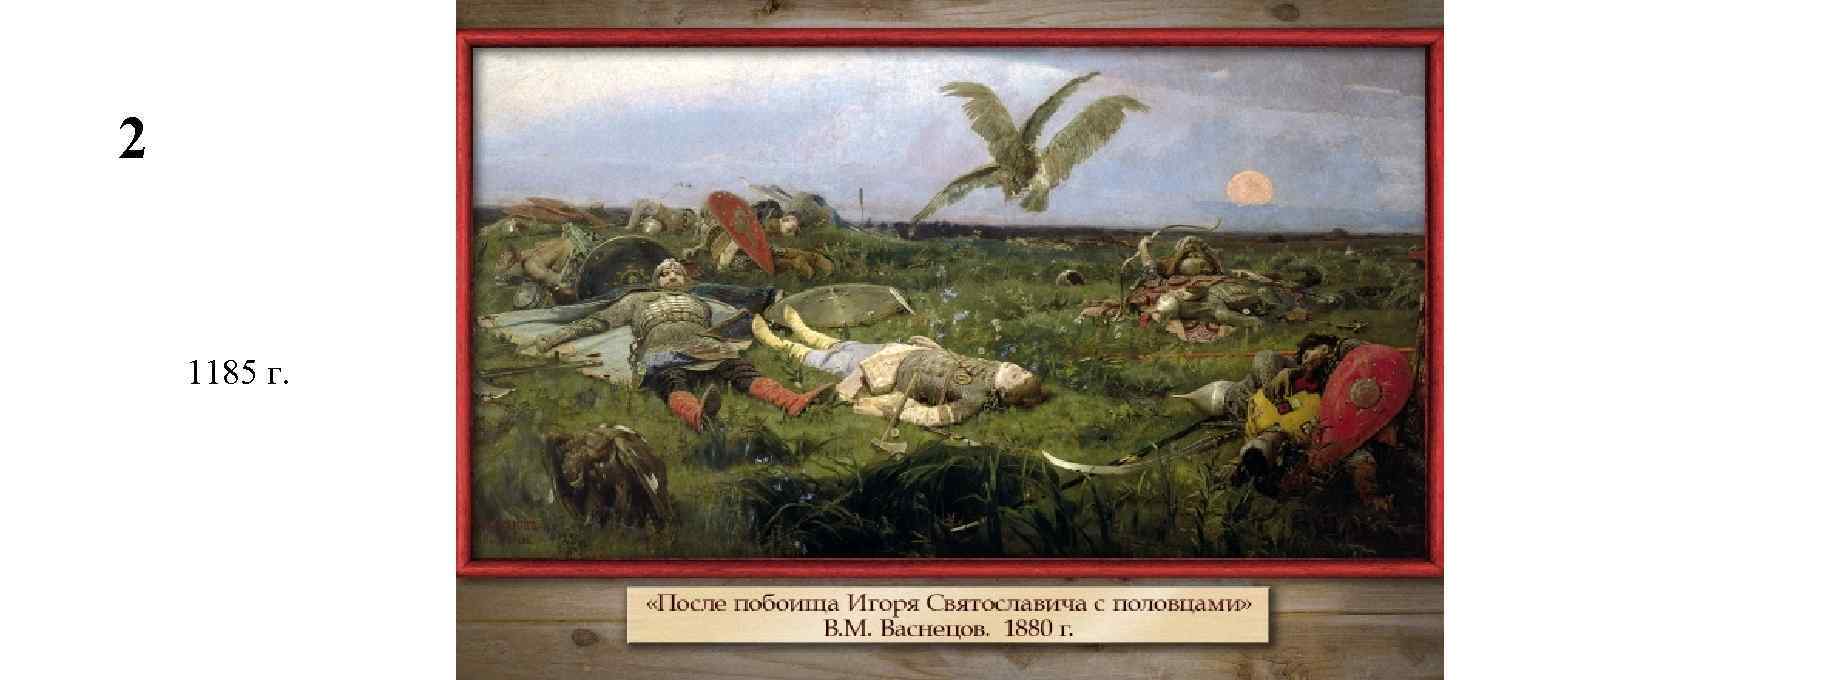 Картина после побоища игоря святославича с половцами